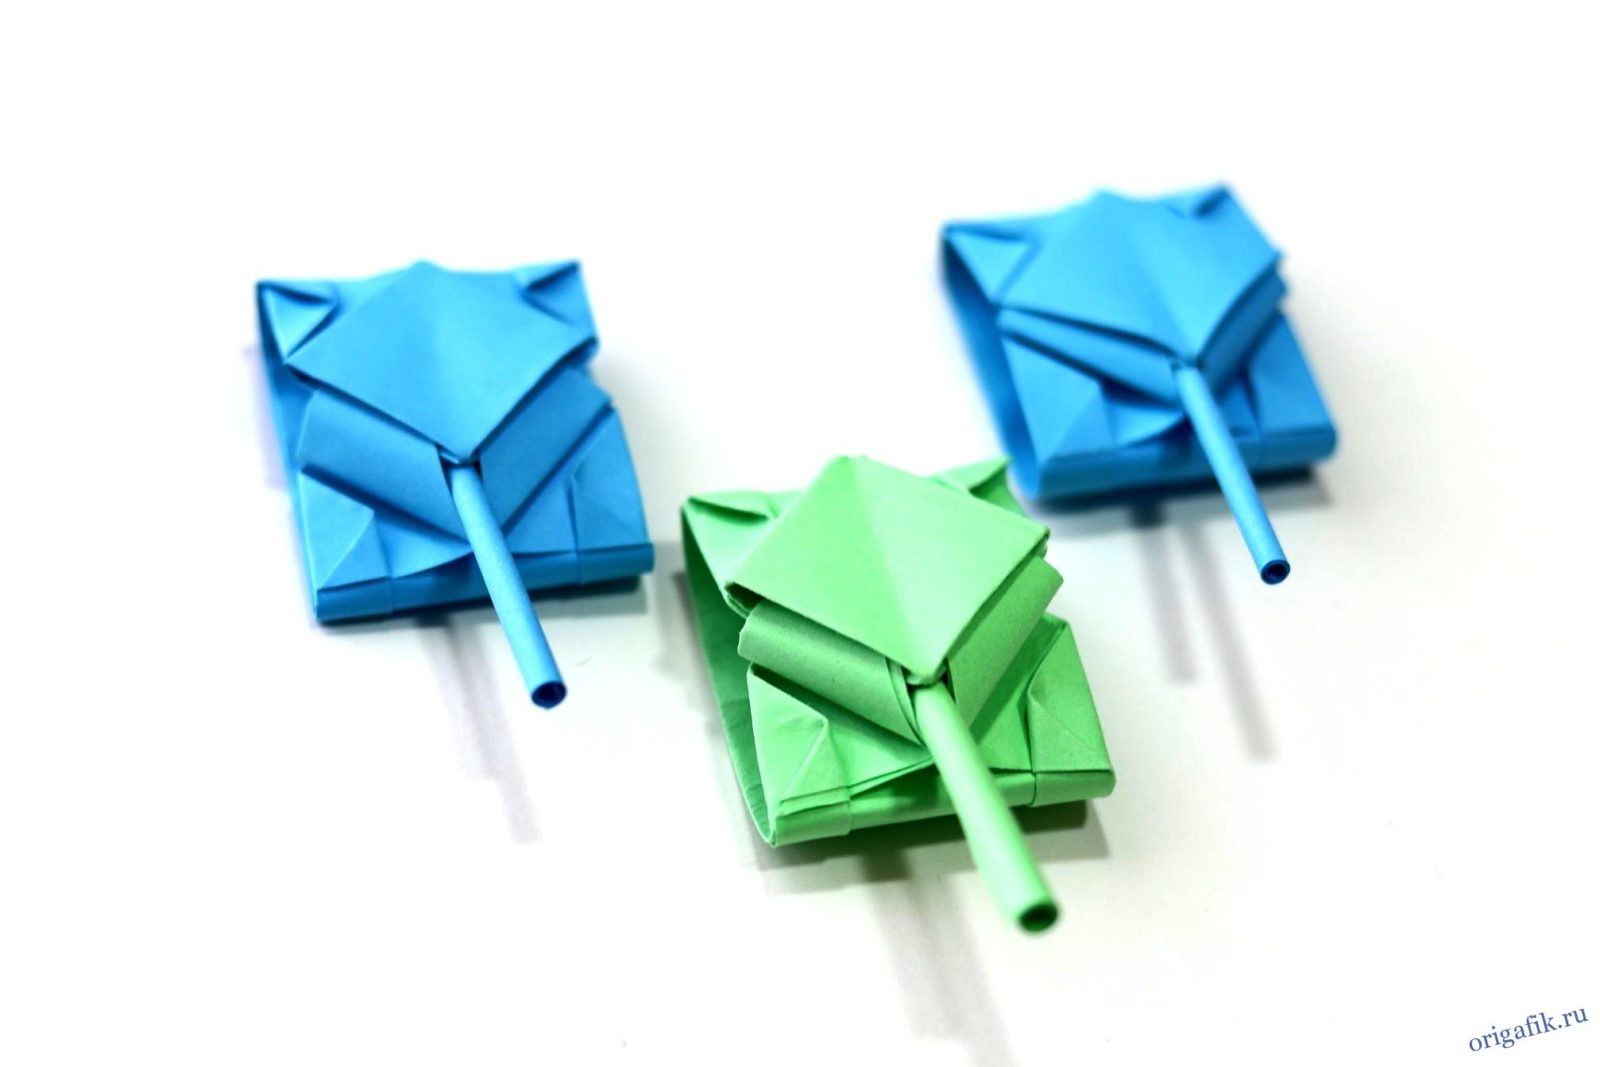 Обои бумажные Оригами к-62